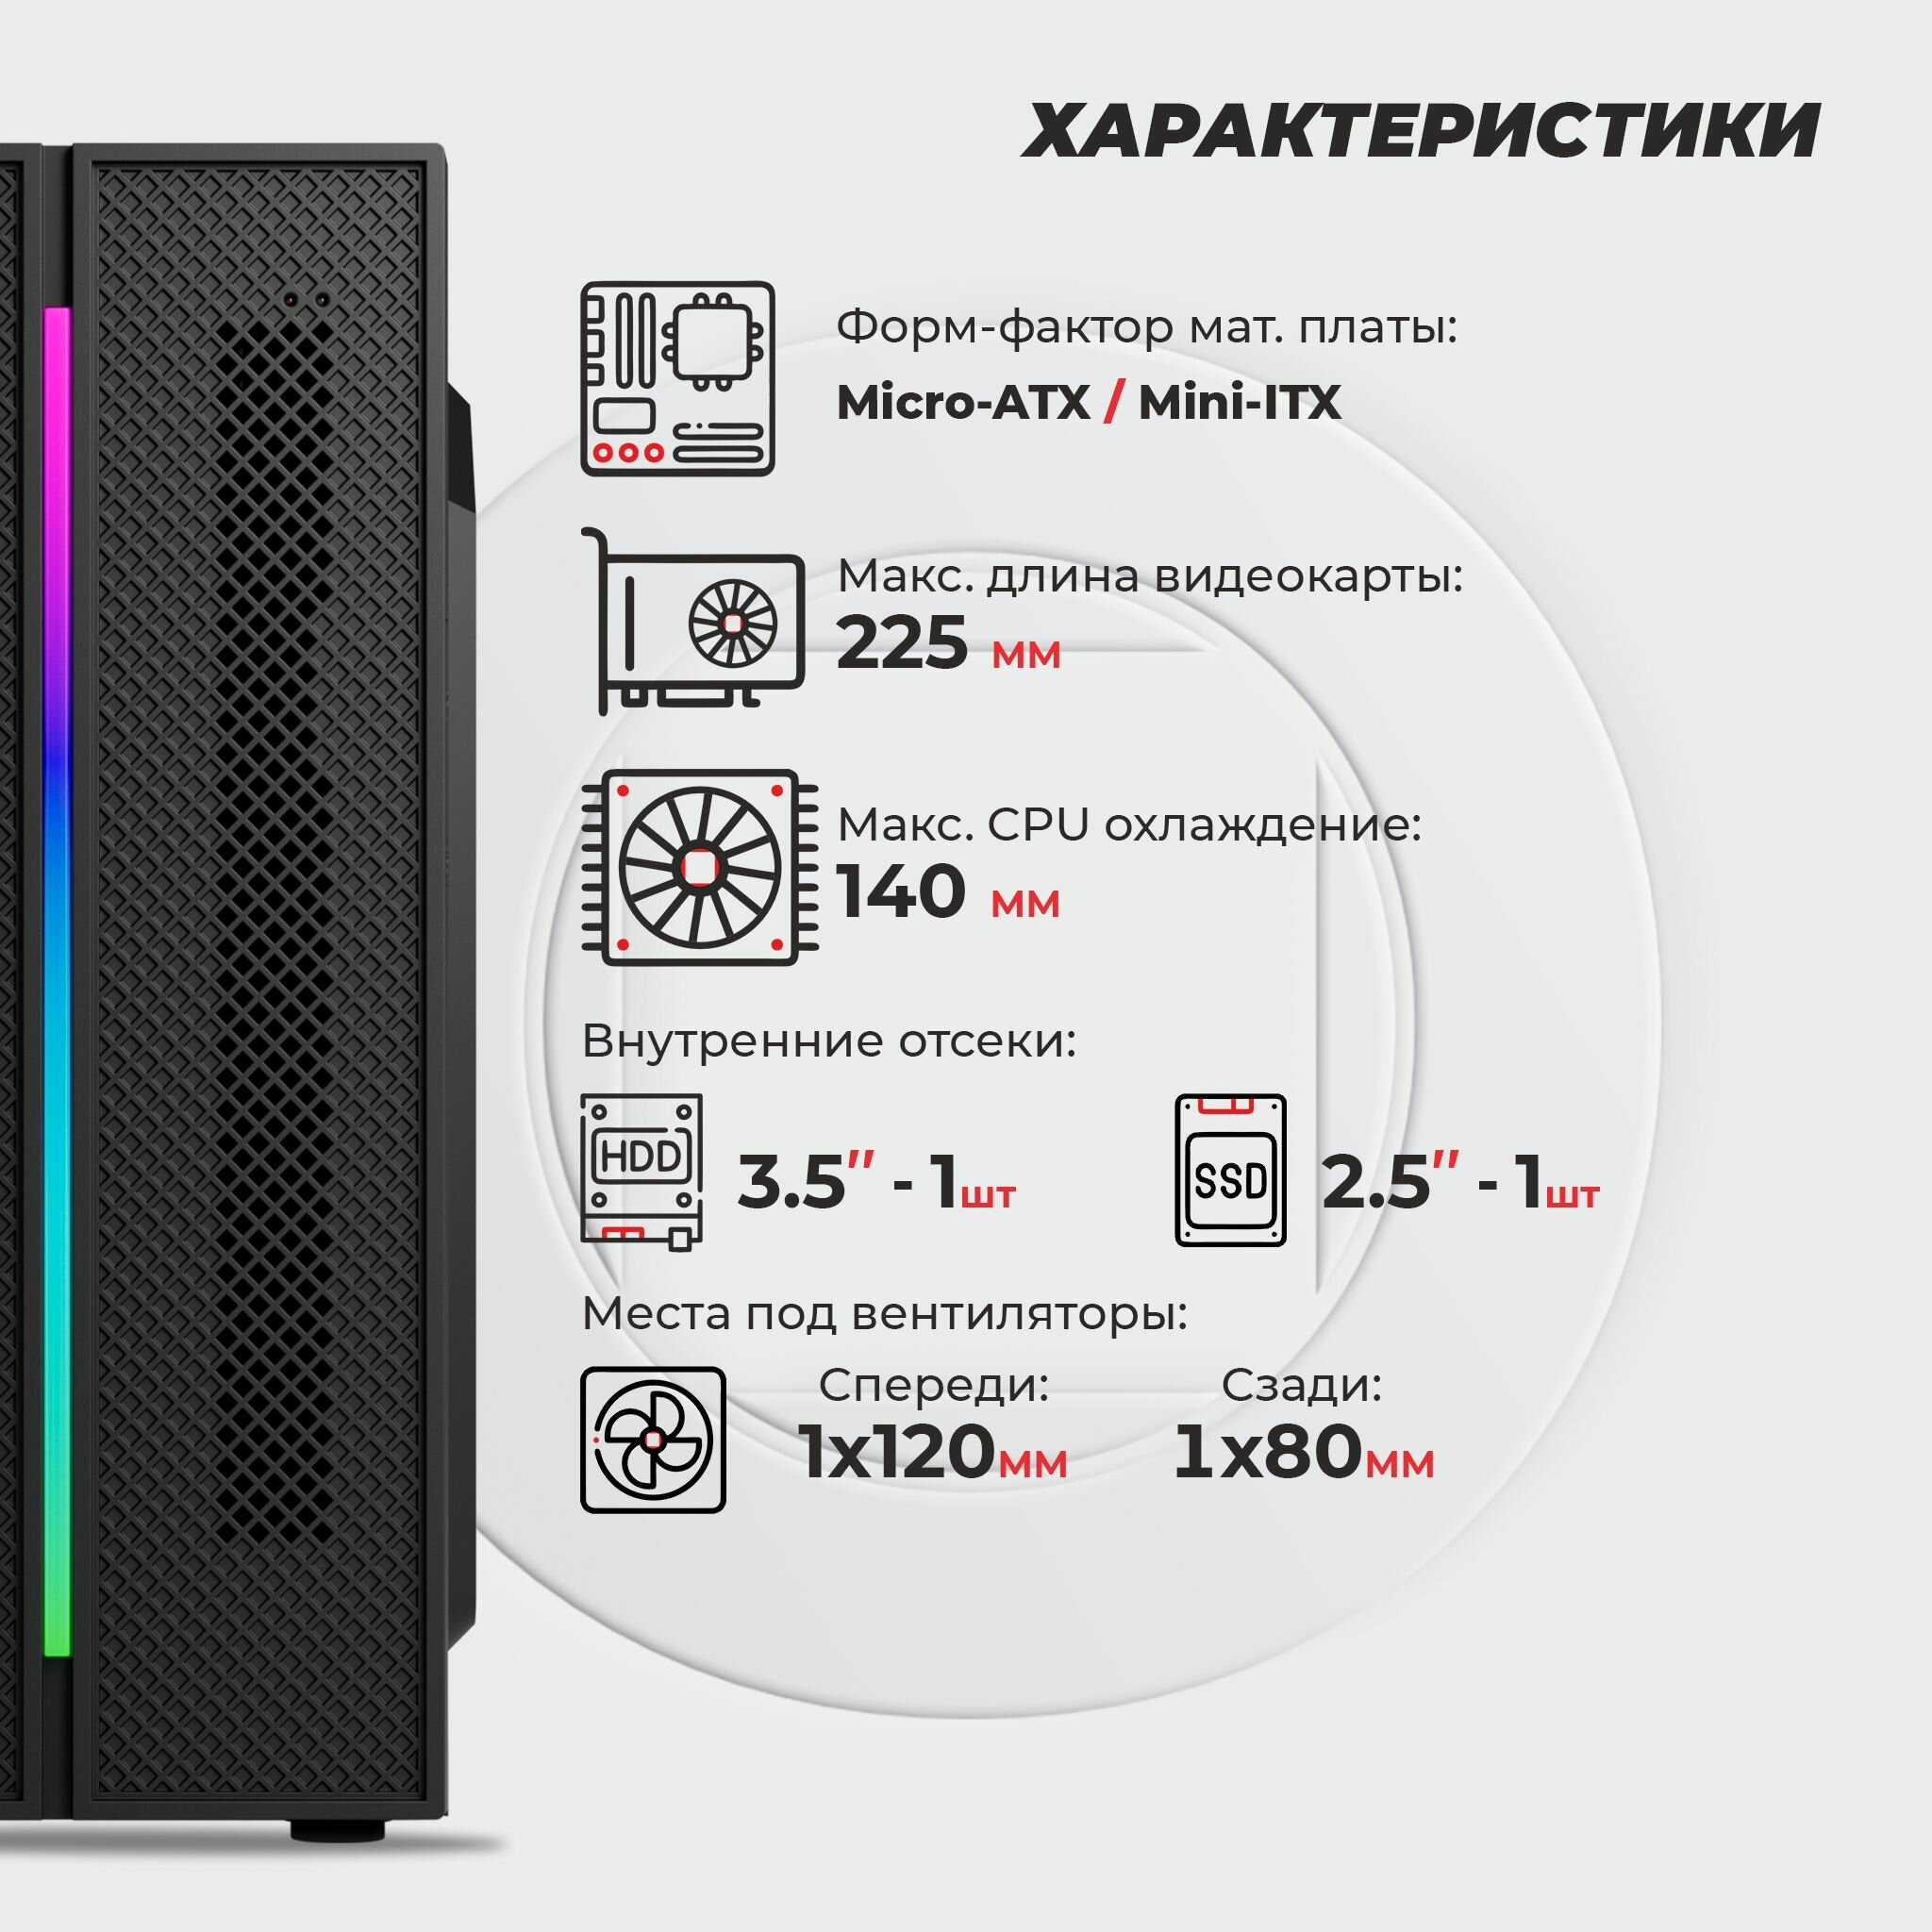 Корпус Prime Box K707 RGB (2 - USB 3.0, 1 - USB 2.0) черный Micro-ATX, Mini-ITX